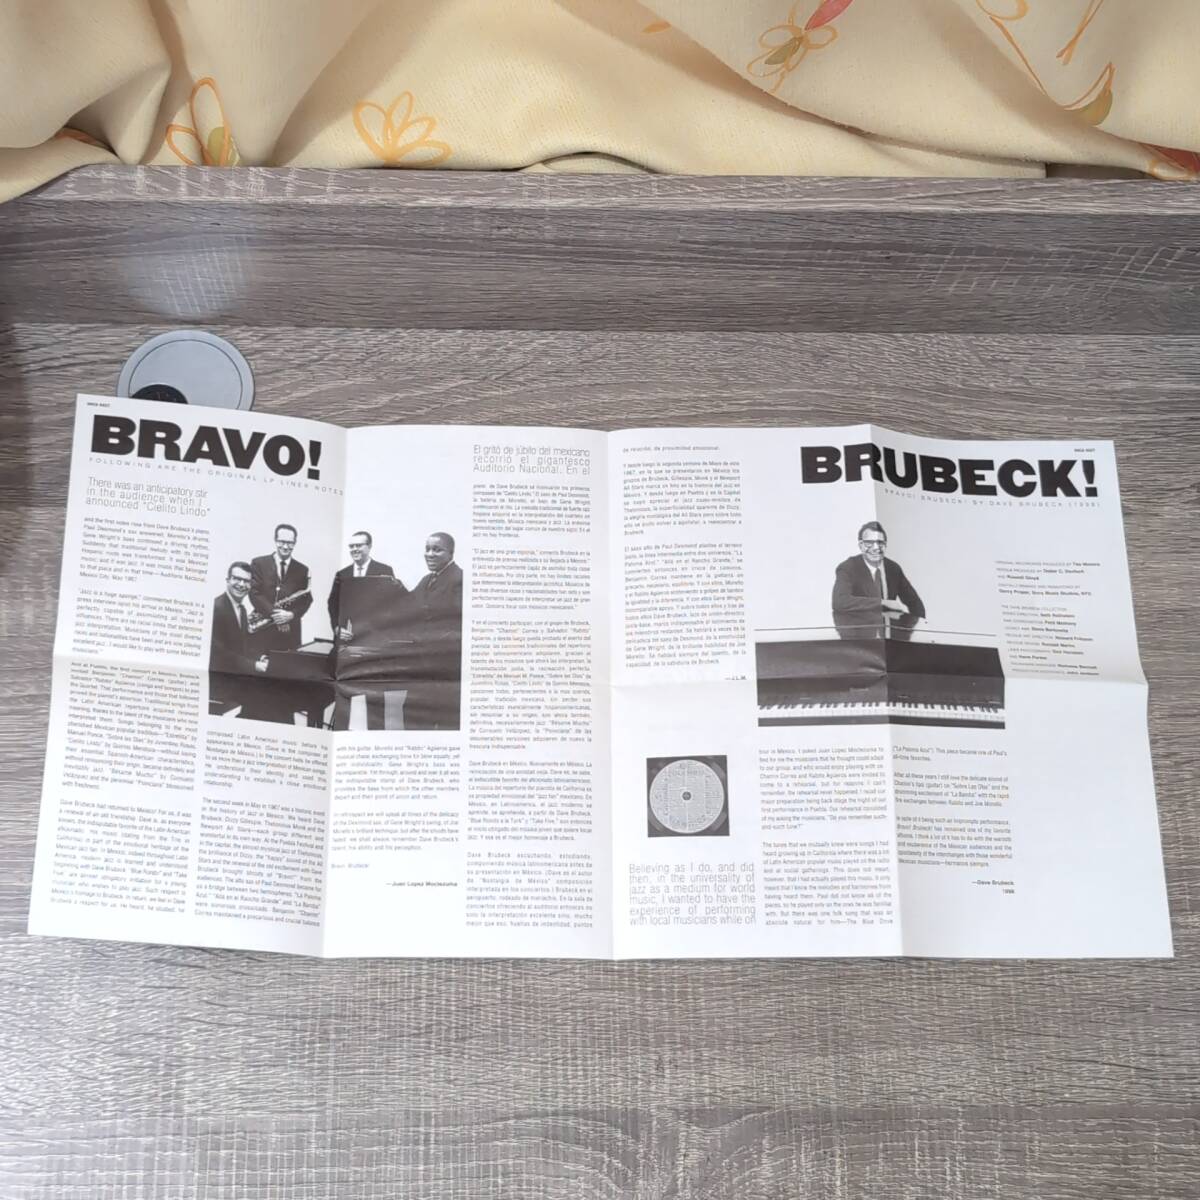 【CD】 紙ジャケット DAVE BRUBECK BRAVO BRUBECK デイヴ ブルーベック ブラボーブルーベック+1 SRCS9527 ジャズJAZZ音楽 マスターサウンド_画像4